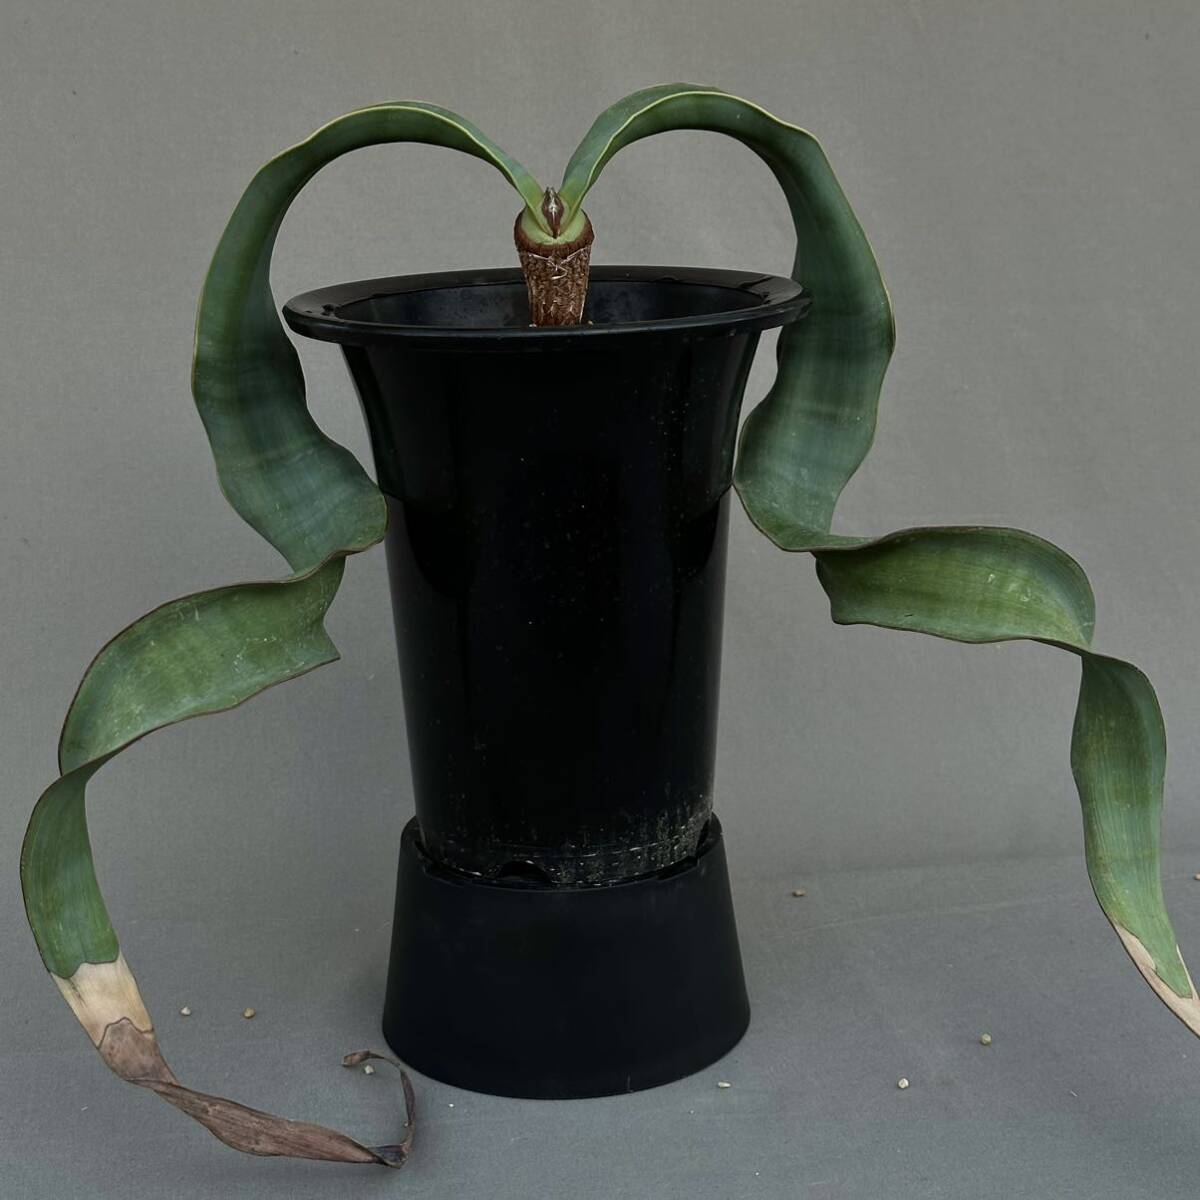 ④ Welwitschia mirabilis / well wi Cheer Mira bi белка .. небо вне [ поиск ]gla сверло spakips Mira bireto белка tetesepta черновой resia